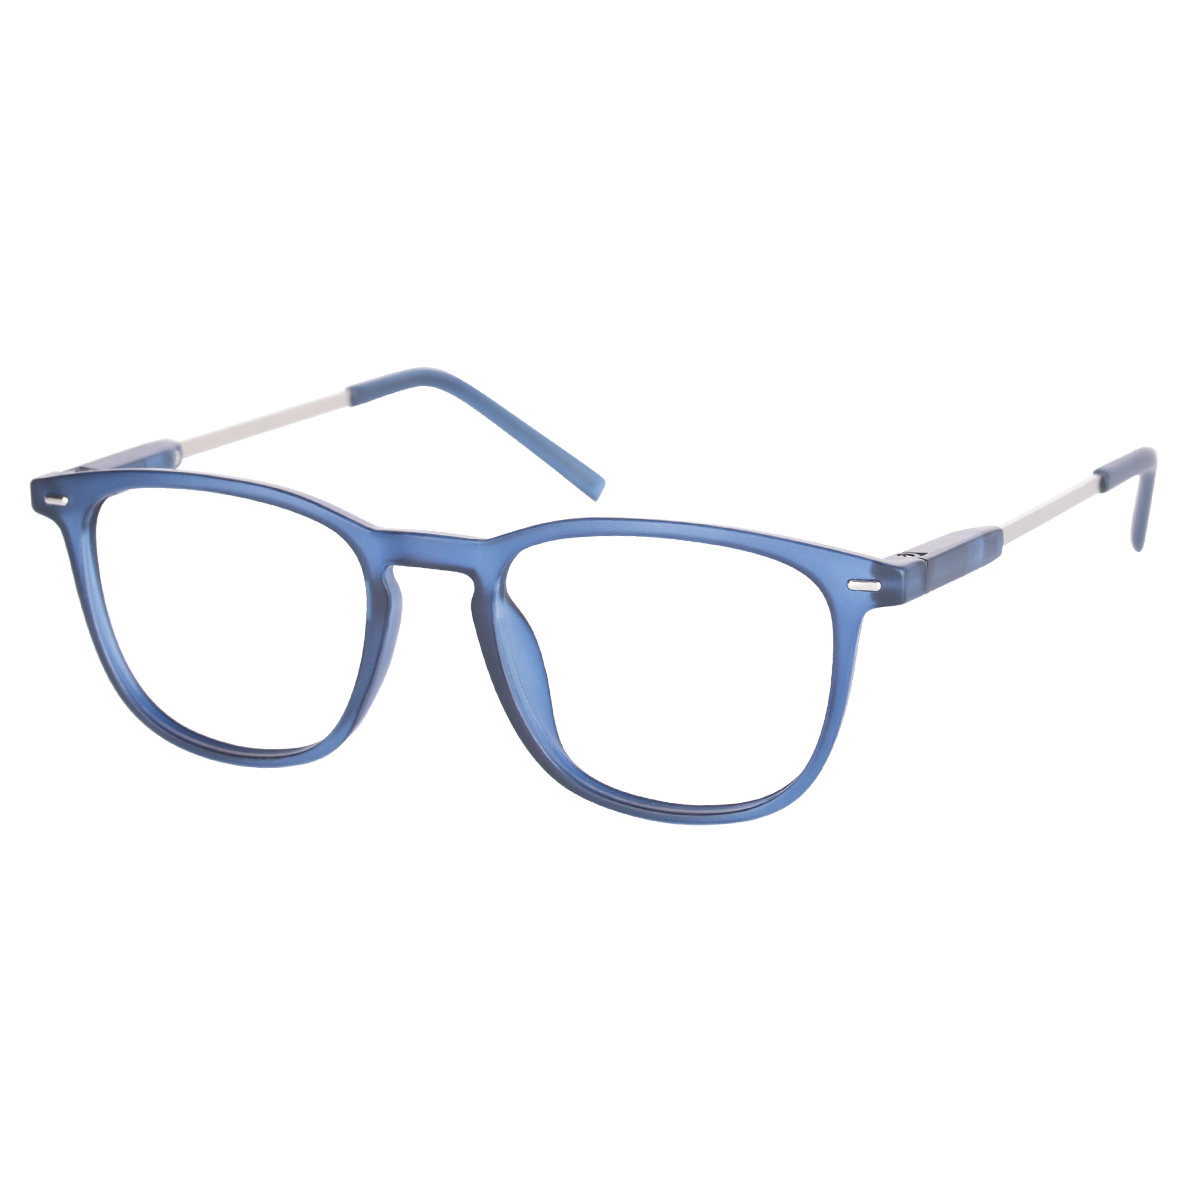 Rowan - Square Blue Reading Glasses for Men & Women